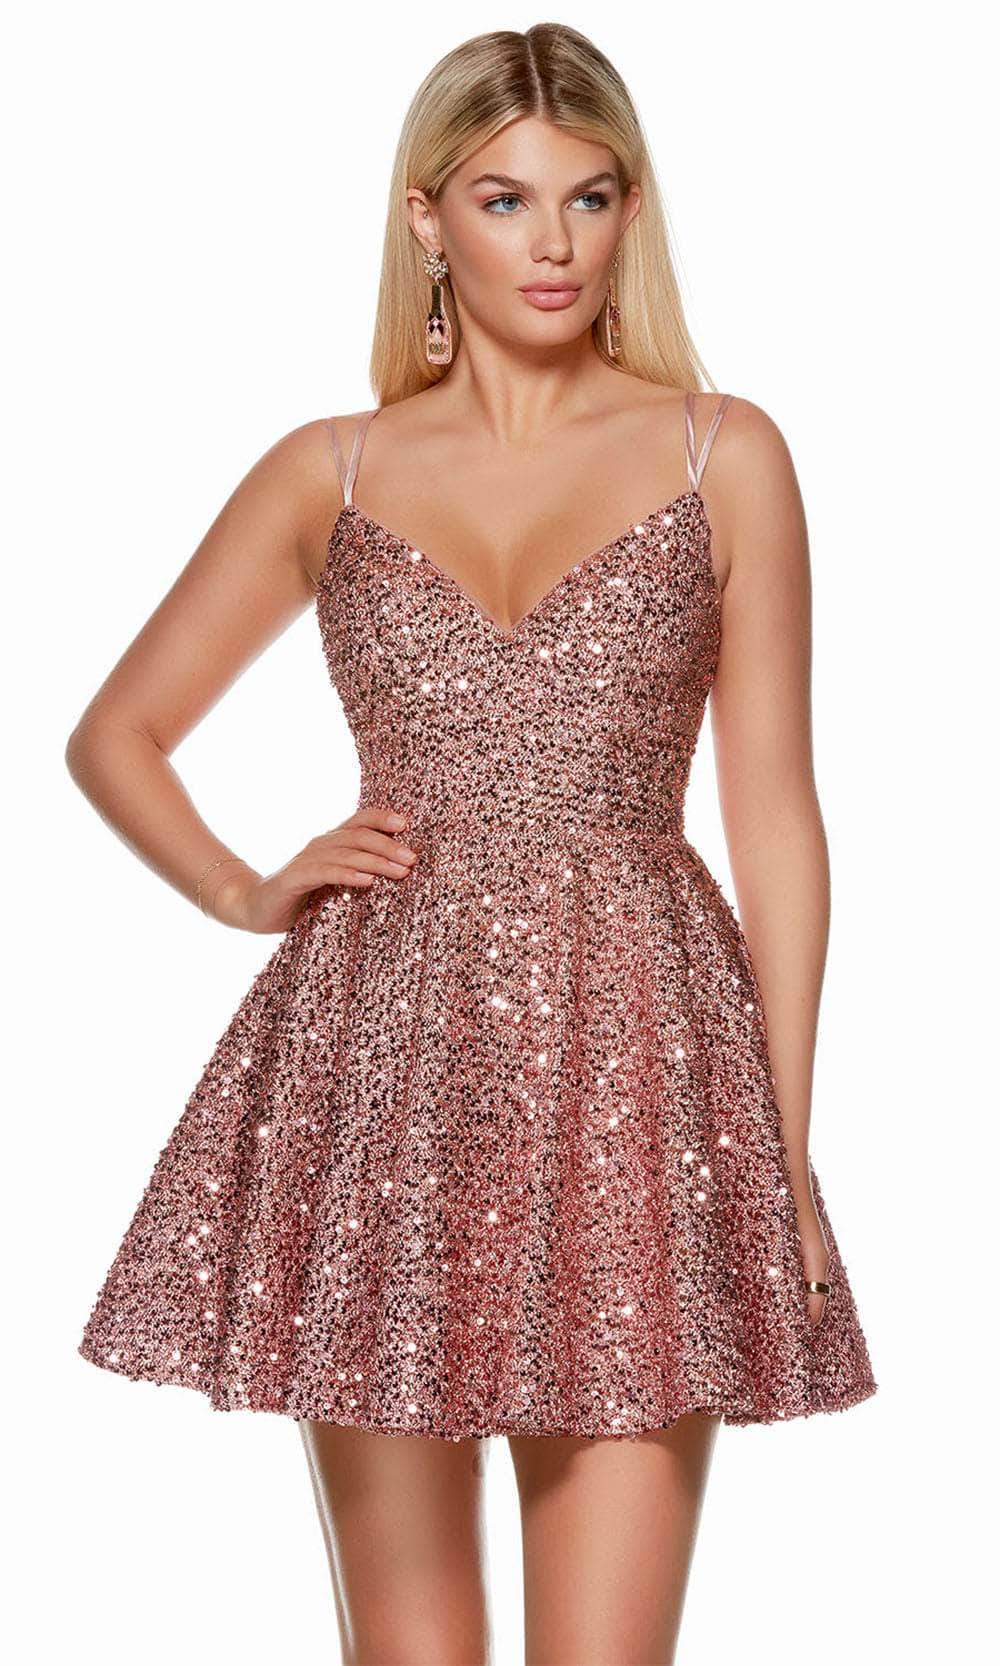 Alyce Paris 3176 - V-Neck Sparkling Cocktail Dress Prom Dresses 000 / Light Mauve